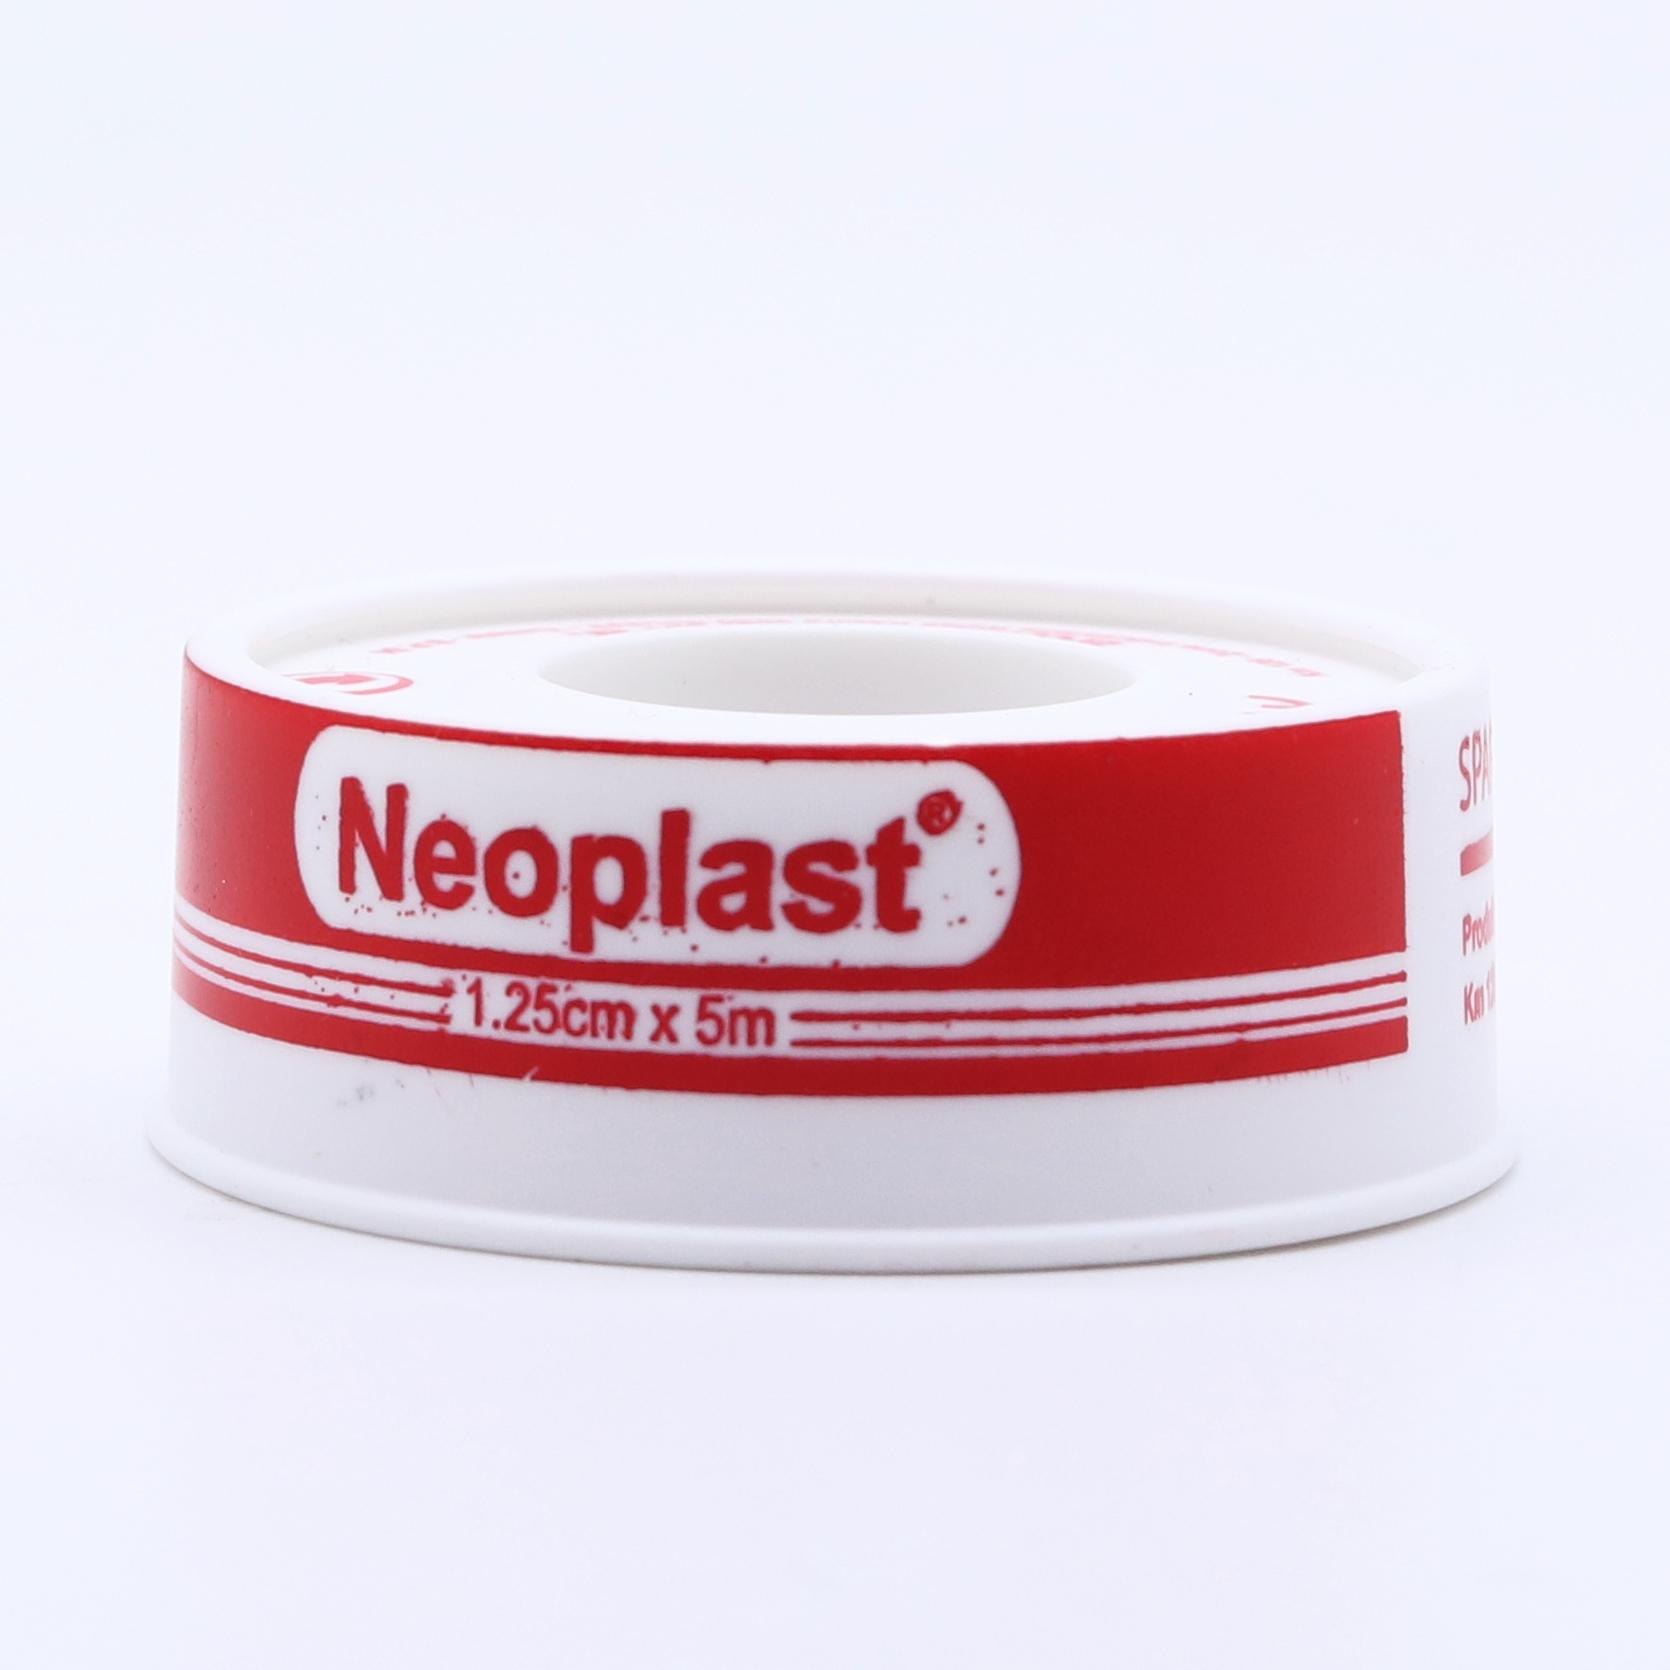 Neoplast